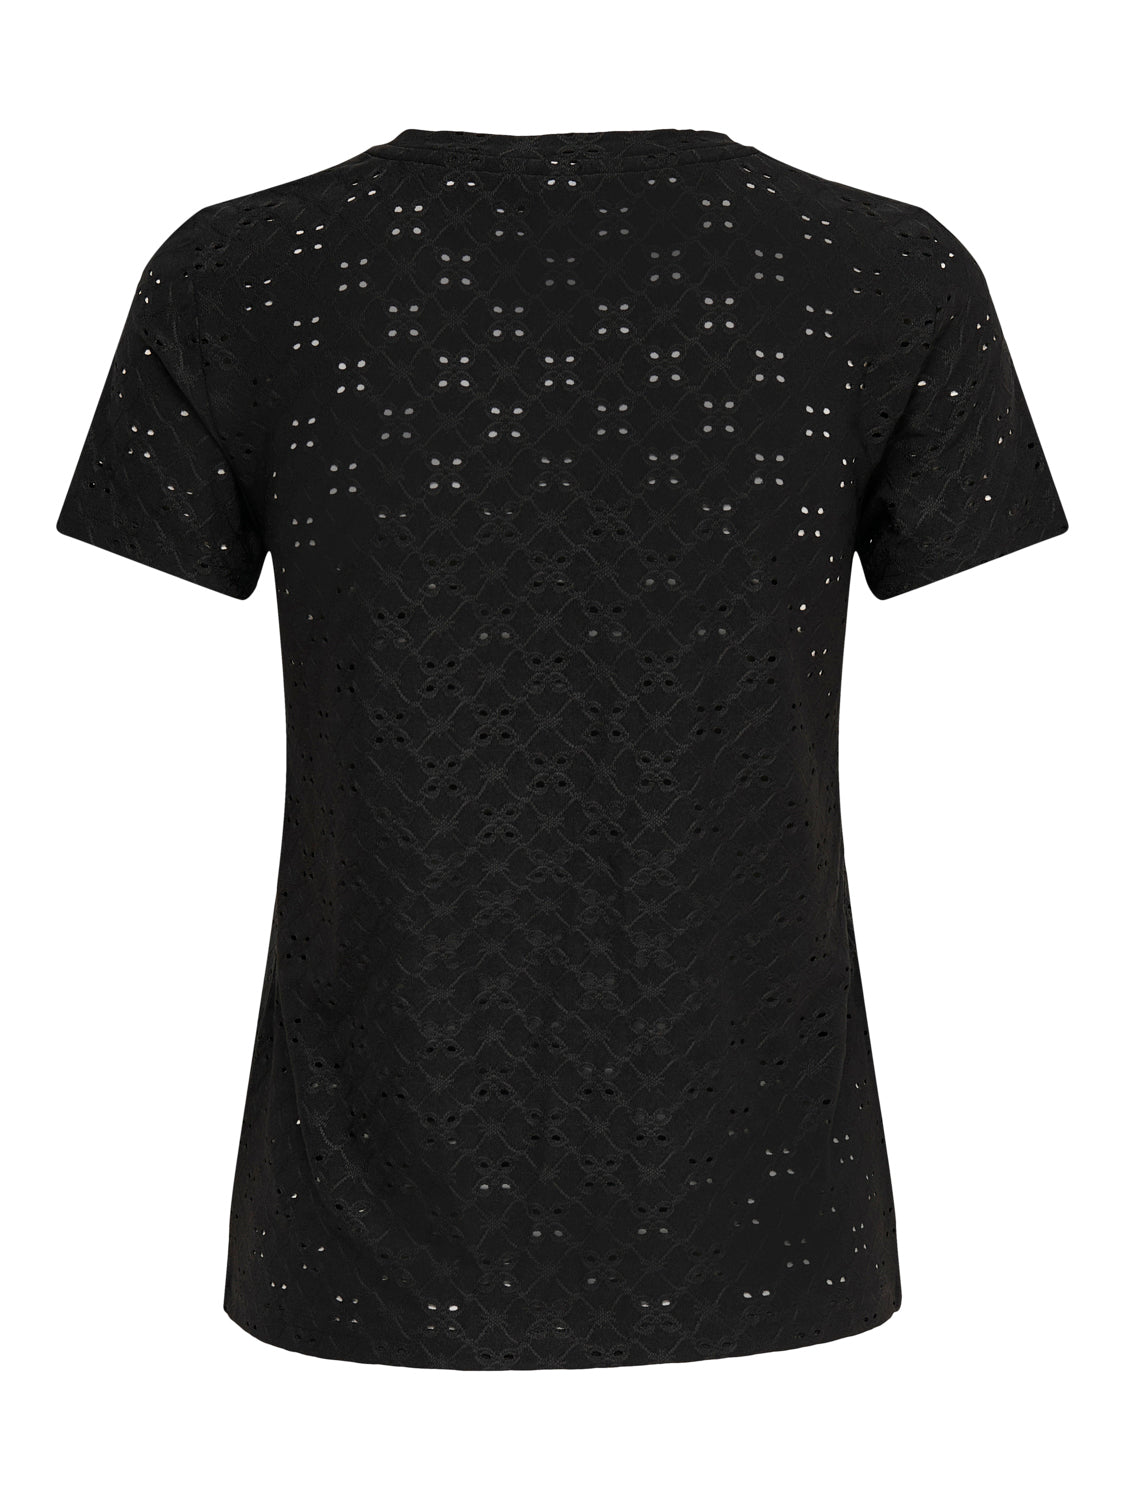 JDYCATHINKA T-shirts & Tops - Black